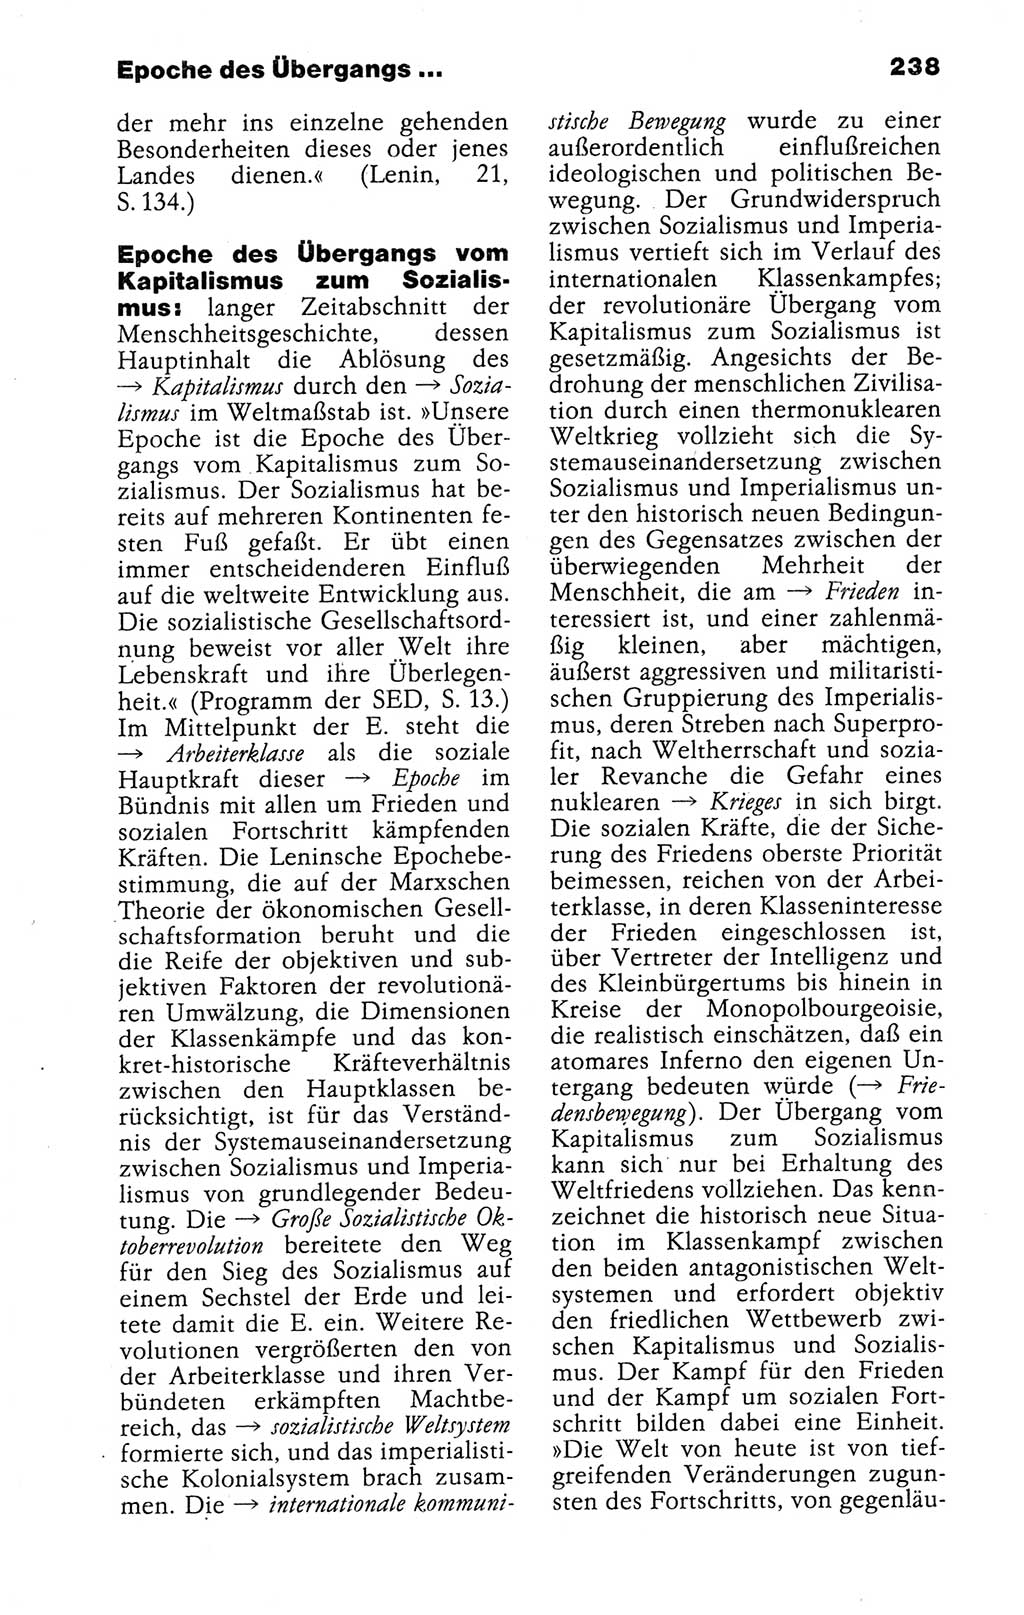 Kleines politisches Wörterbuch [Deutsche Demokratische Republik (DDR)] 1988, Seite 238 (Kl. pol. Wb. DDR 1988, S. 238)